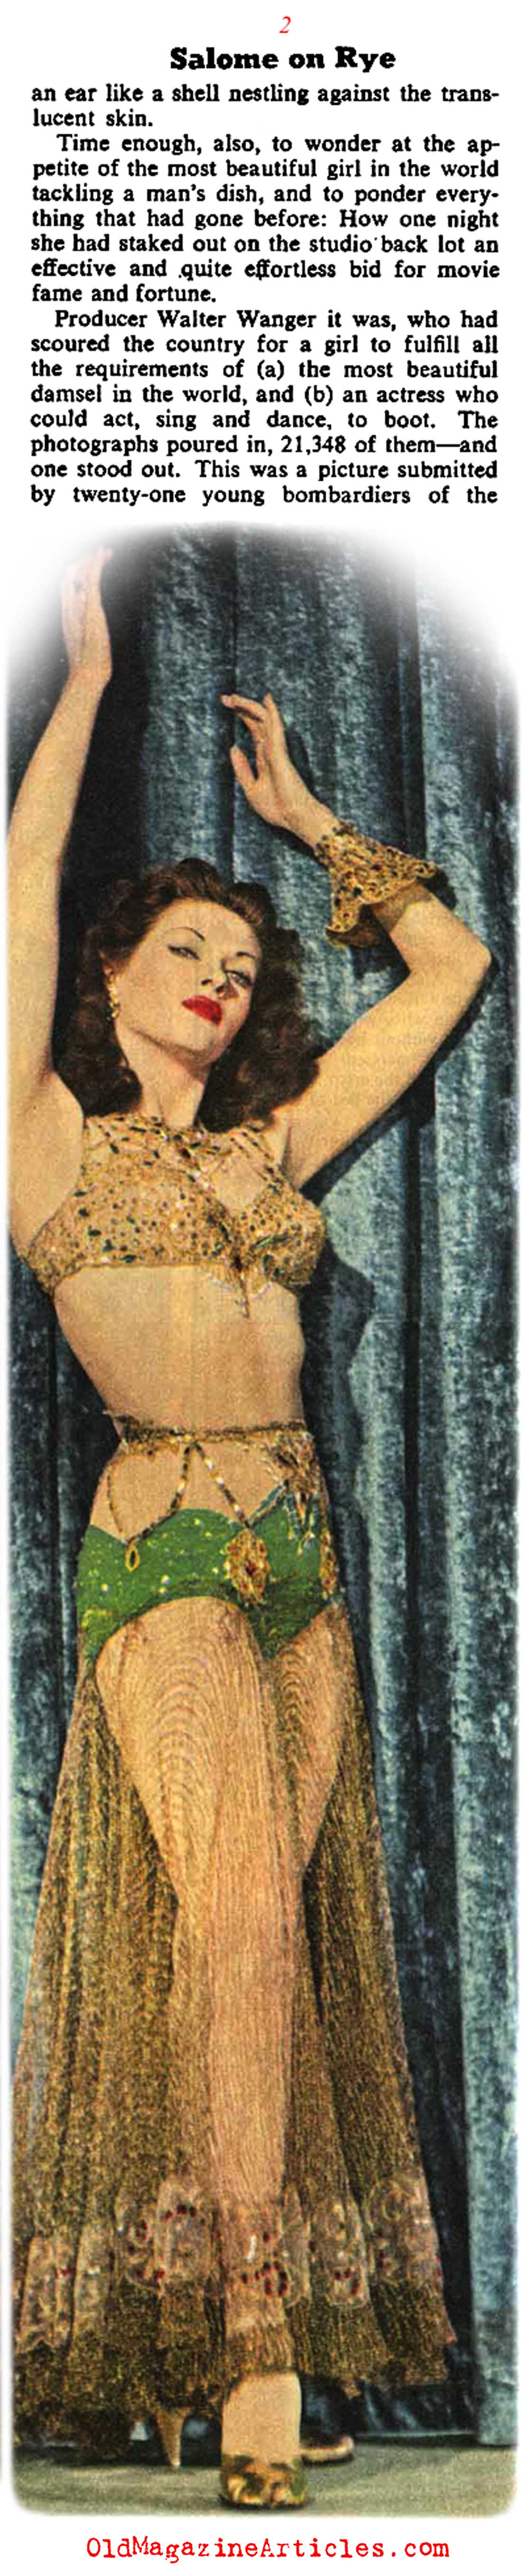 Yvonne De Carlo Arrives (Collier's Magazine, 1945)